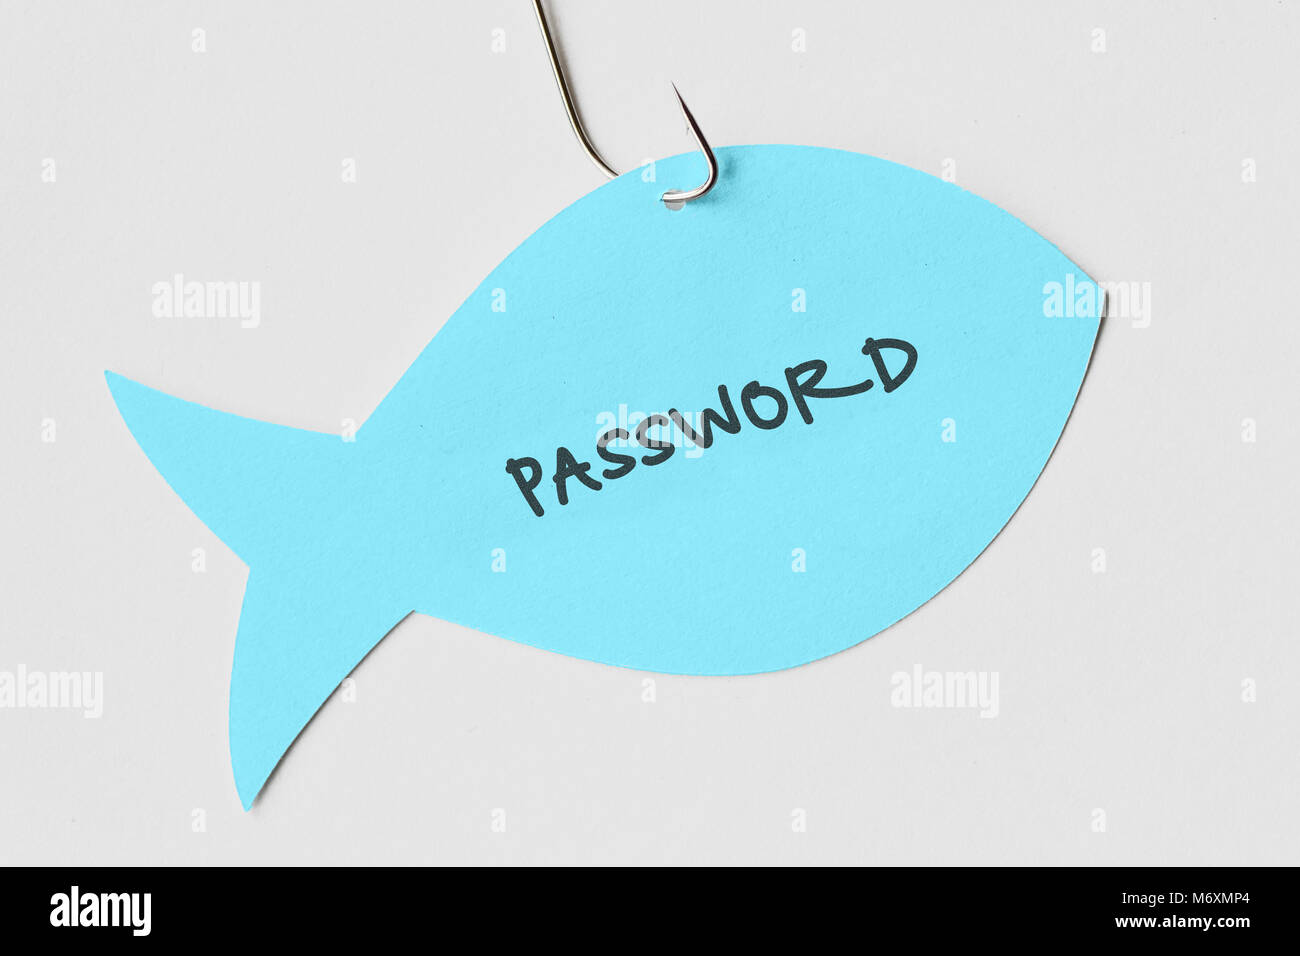 Kennwort auf einem Papier Hinweis in Form eines Fisches zu einem Haken geschrieben - Phishing und Internet Security Konzept Stockfoto